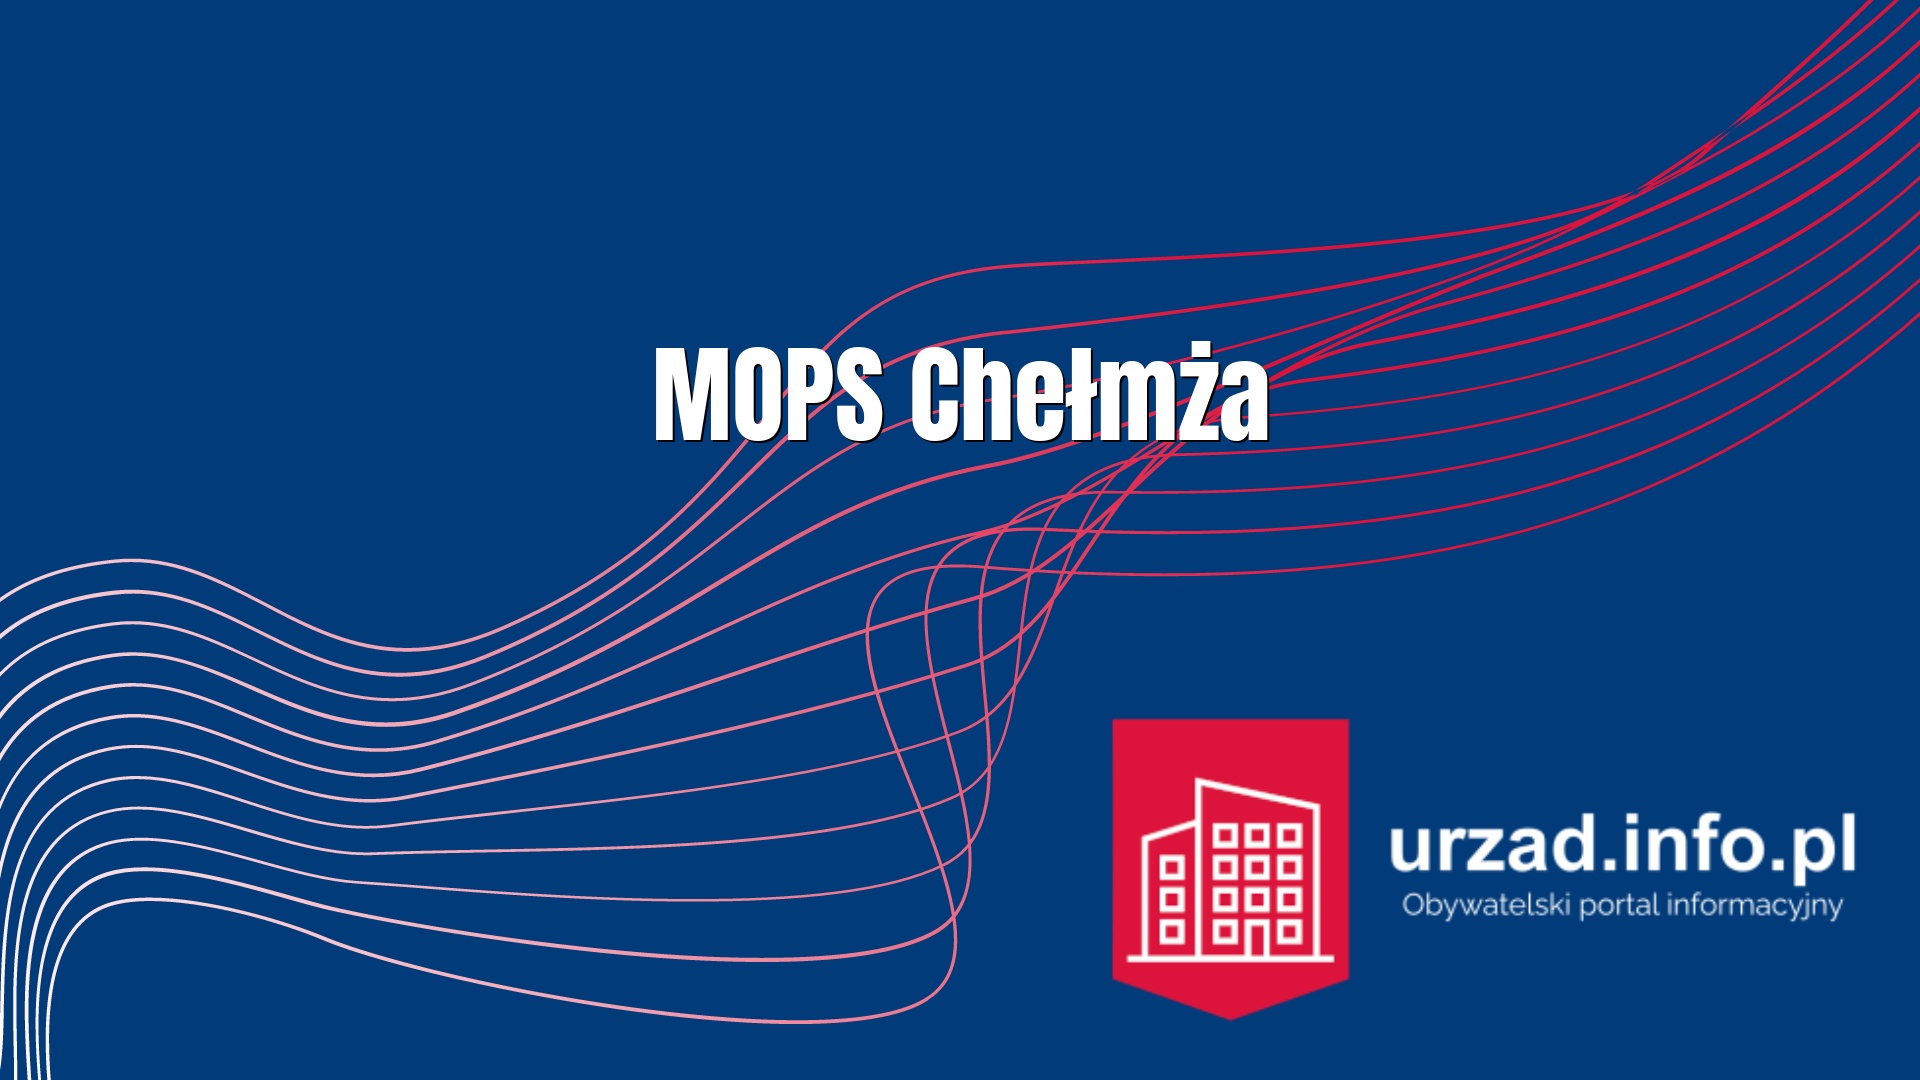 MOPS Chełmża - Miejski Ośrodek Pomocy Społecznej w Chełmży